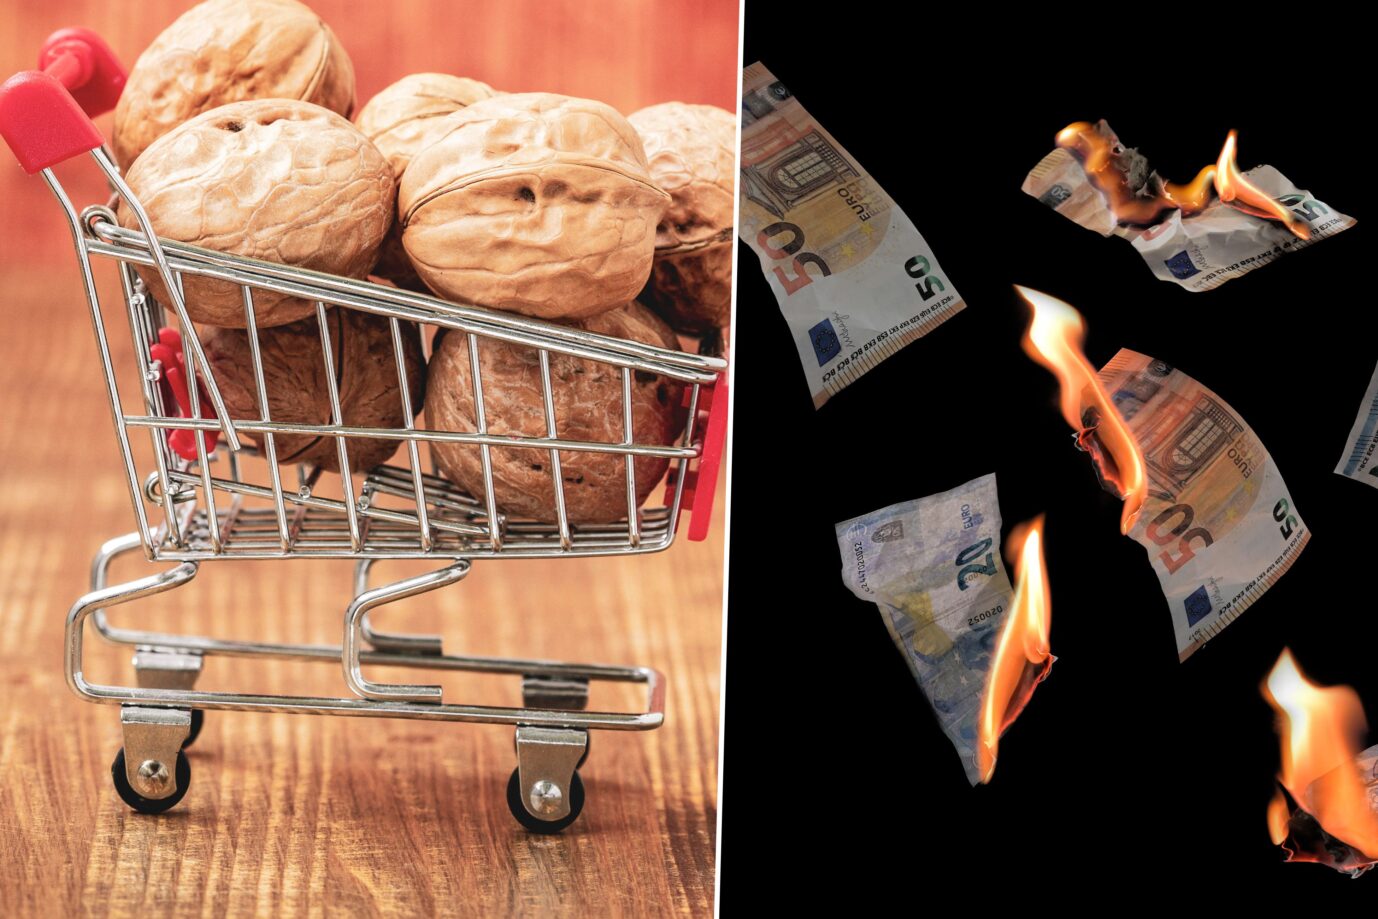 Das Bild zeigt einen Miniatur-Einkaufskorb mit Walnüssen und brennende Euronoten. Mogelpackungen sind derzeit häufig im Supermarkt zu finden-